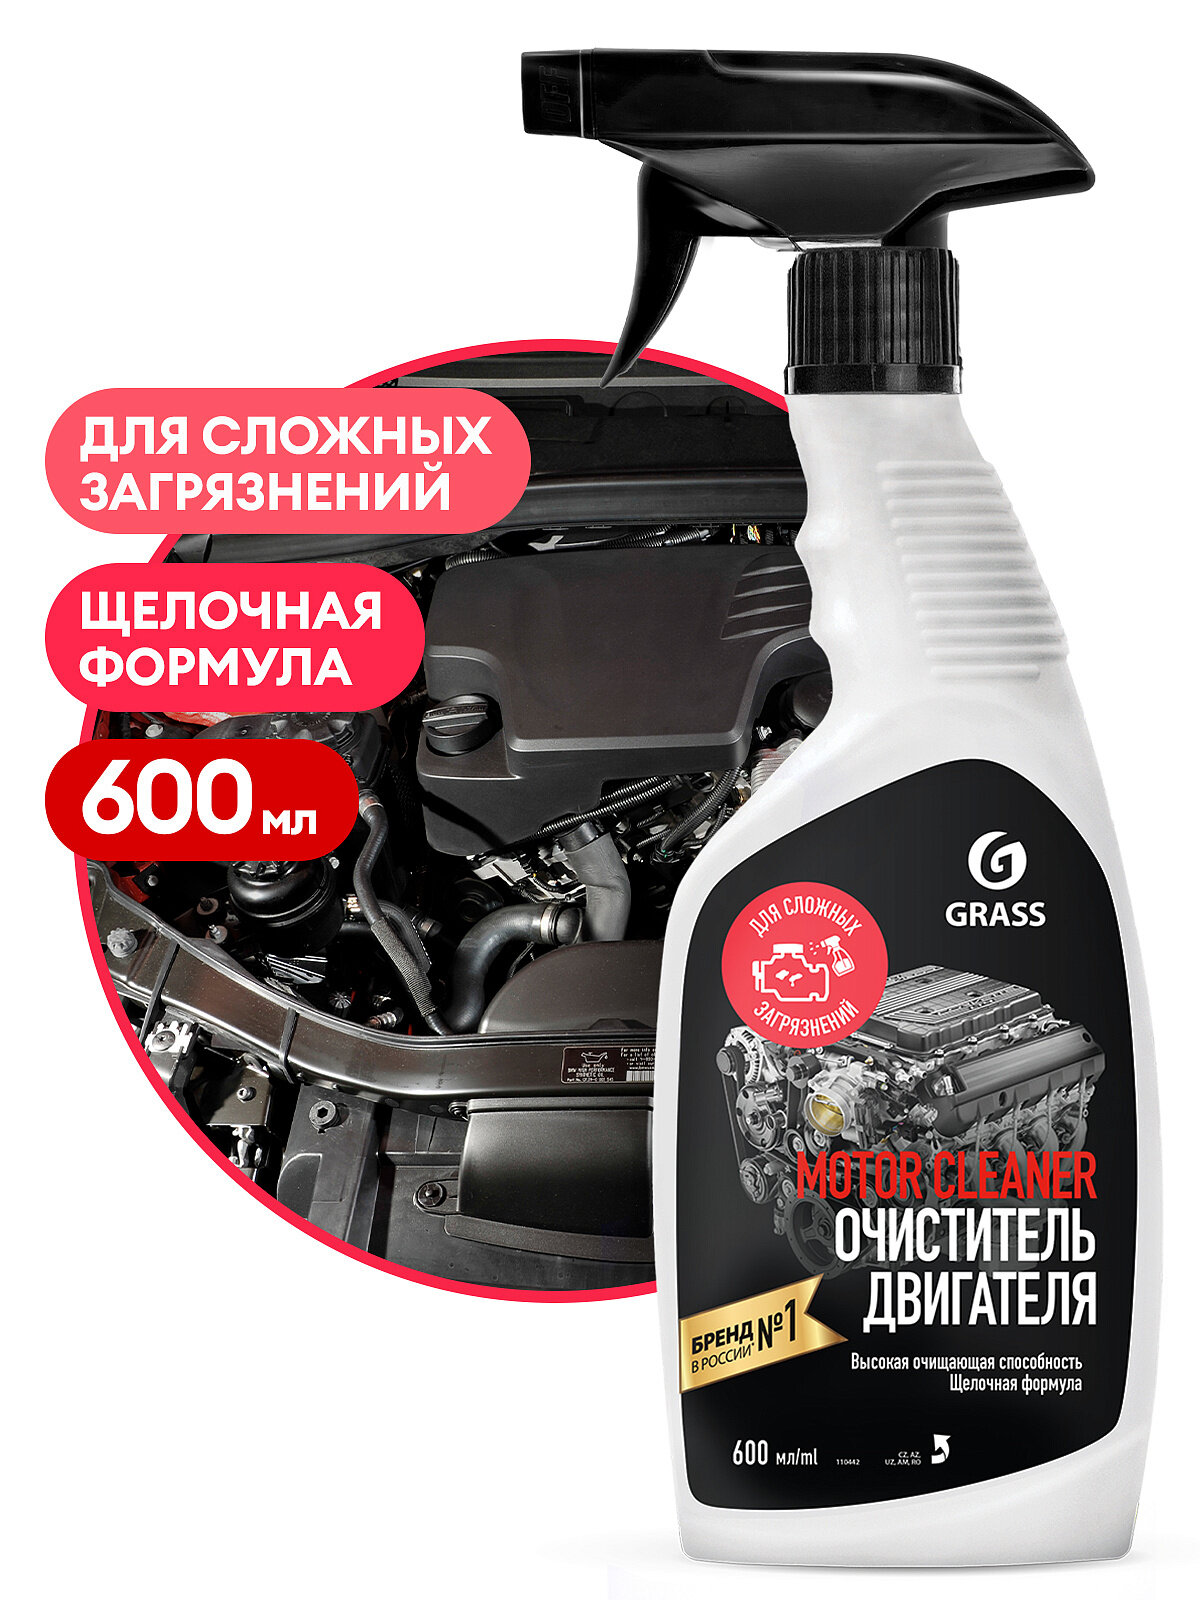 Очиститель двигателя Grass Motor Cleaner 600 мл